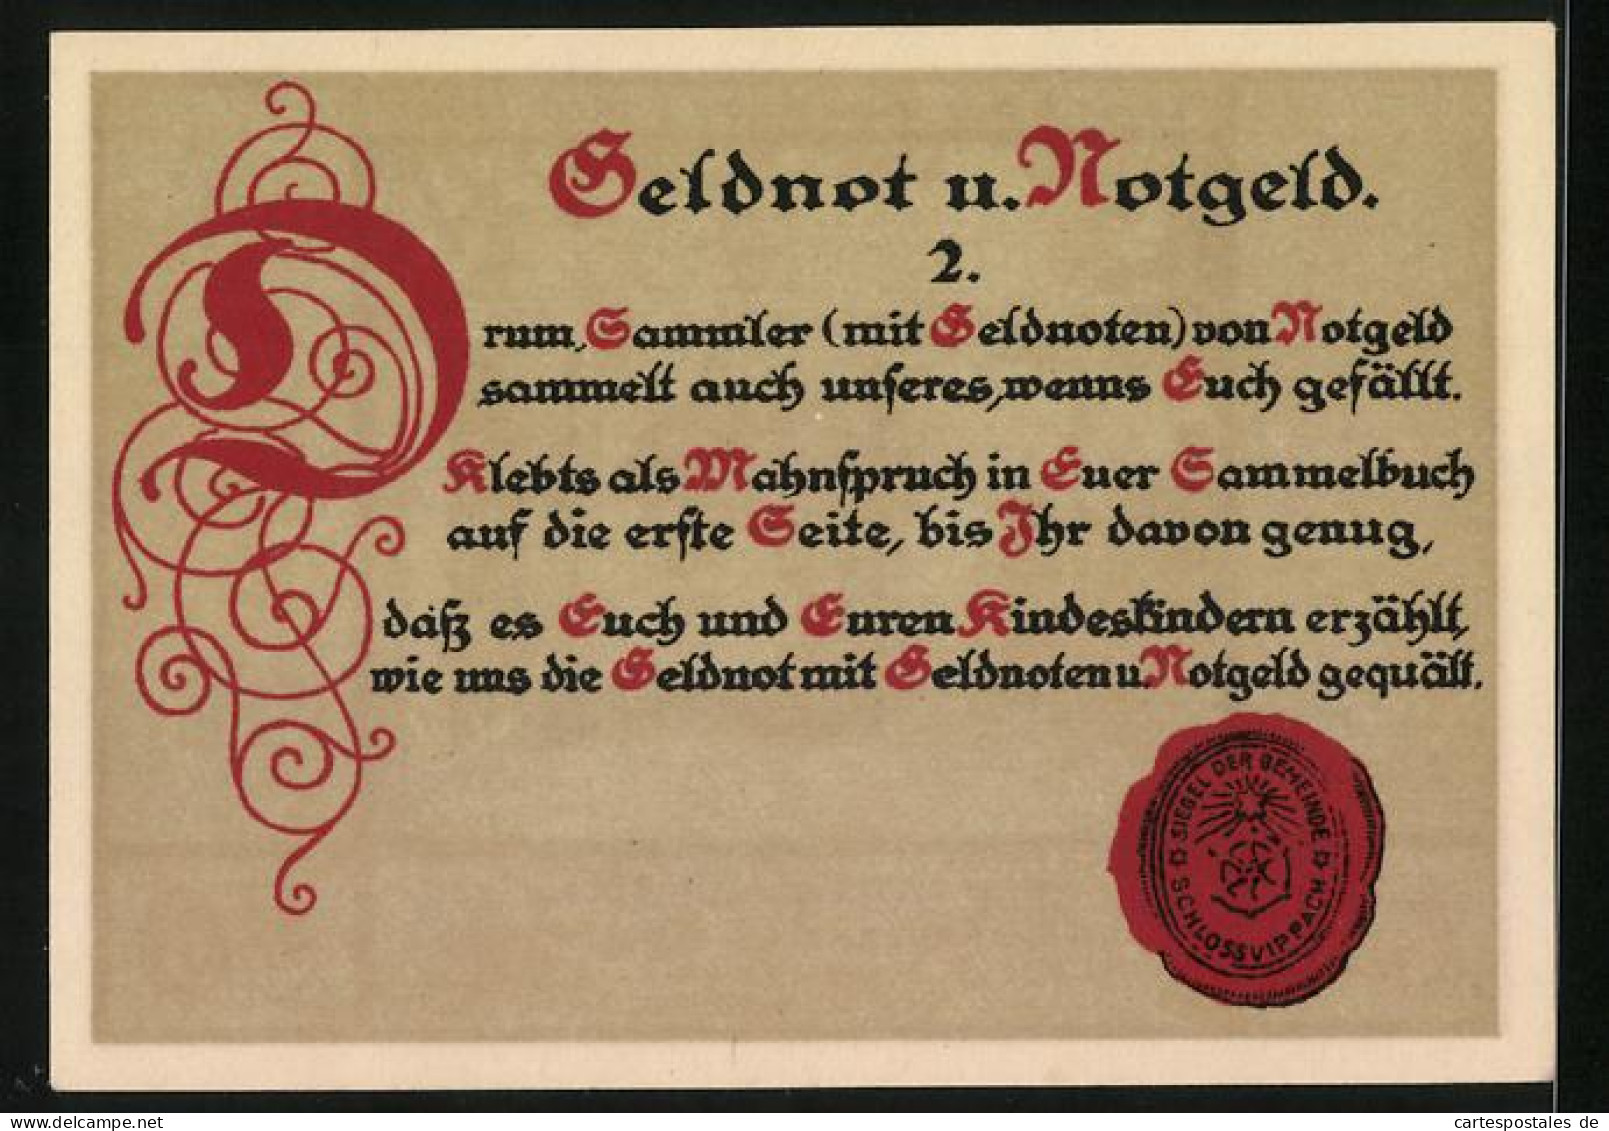 Notgeld Schlossvippach 1921, 50 Pfennig, Schlosspartie, Ähren, Siegel  - [11] Local Banknote Issues